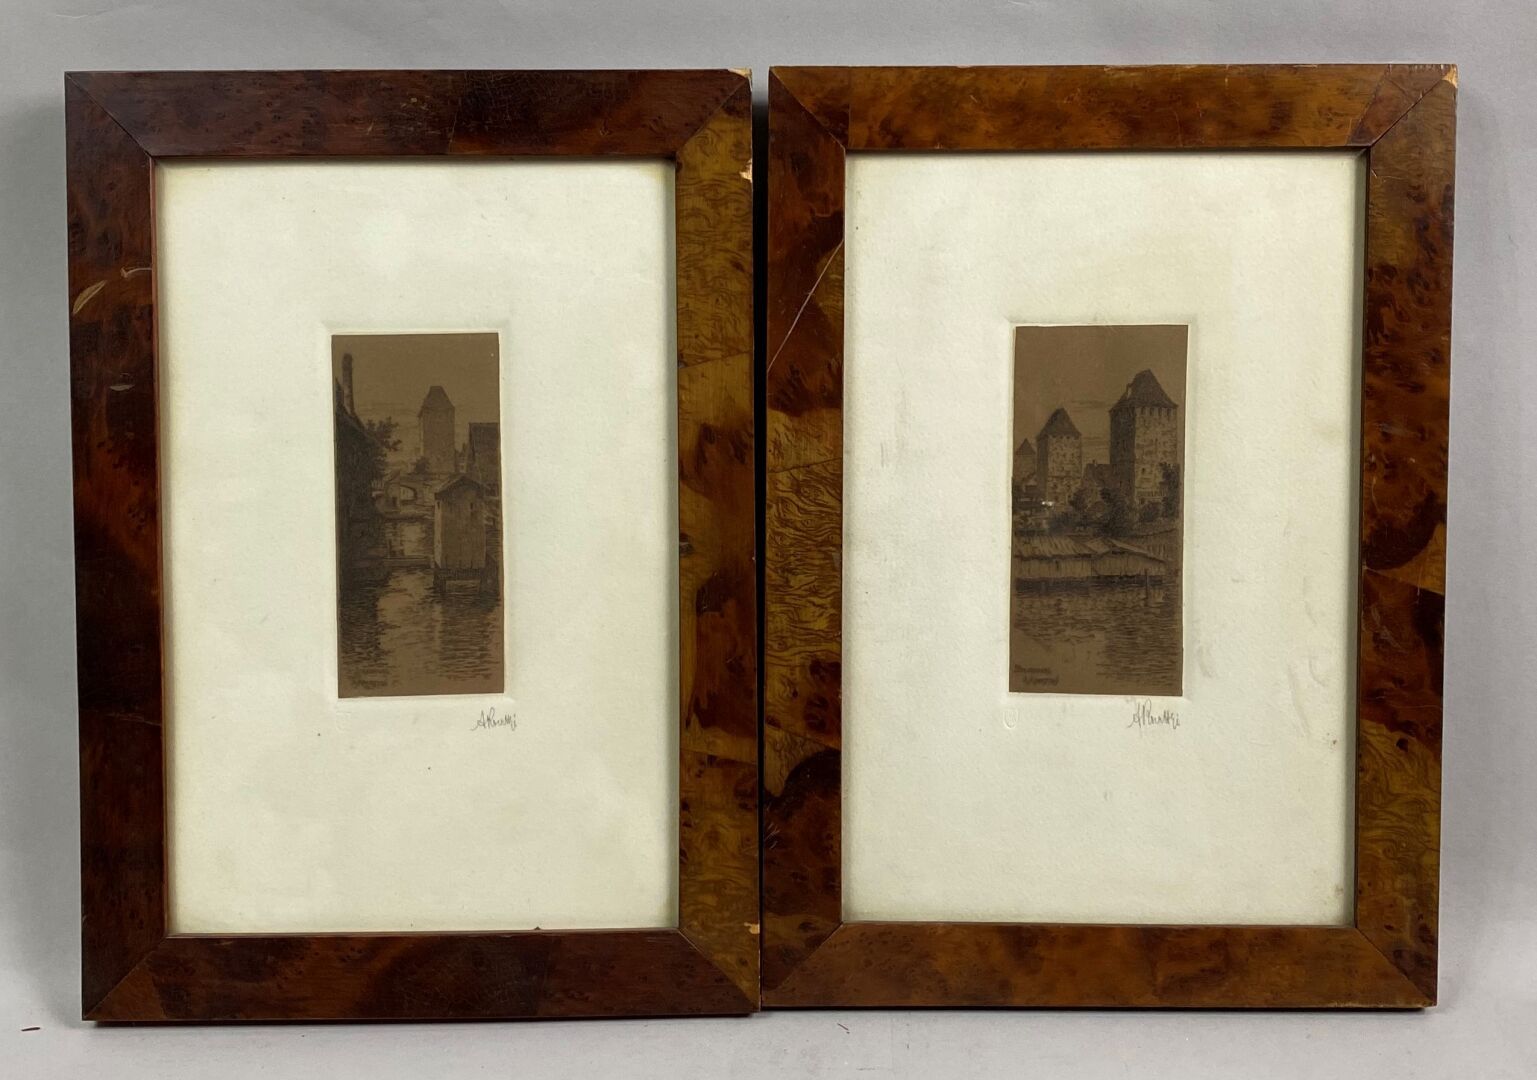 Null KOERTTGE Albert (1861-1940)

Strasbourg

Two small etchings on brown paper &hellip;